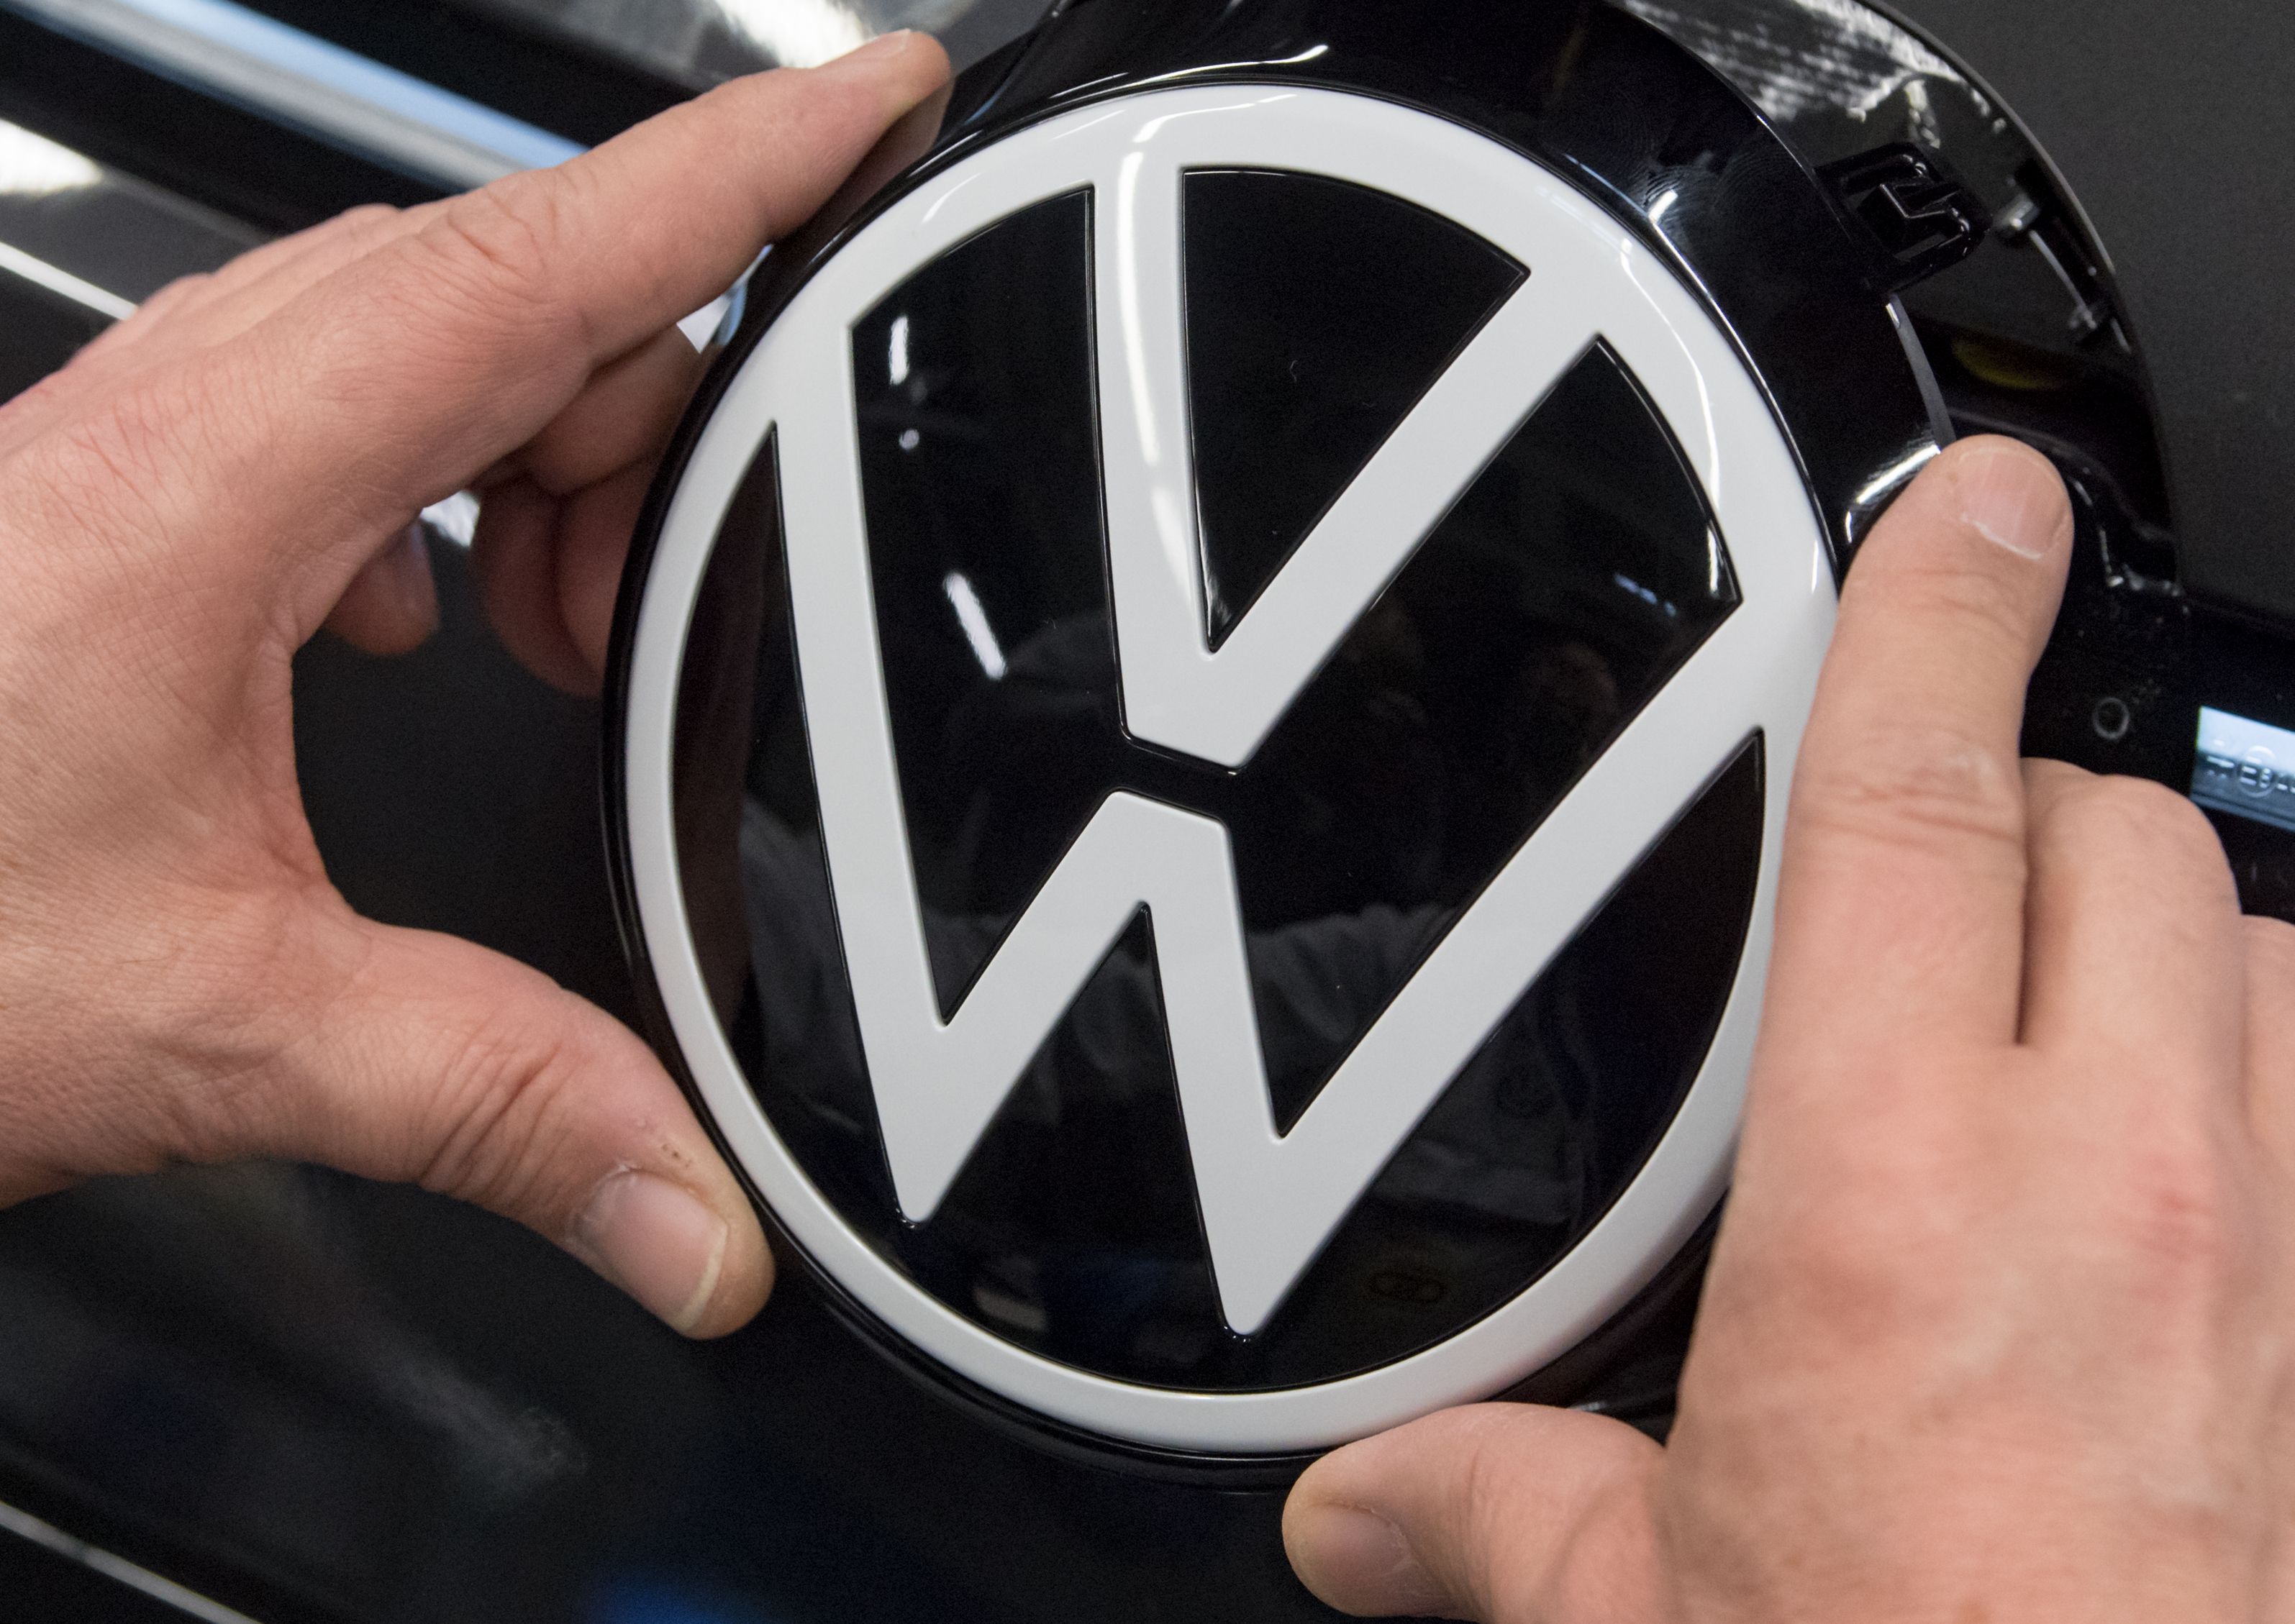 Un nou scandal pentru Volkswagen? Producătorul auto se confruntă din nou cu acuzaţii de muncă forţată în China